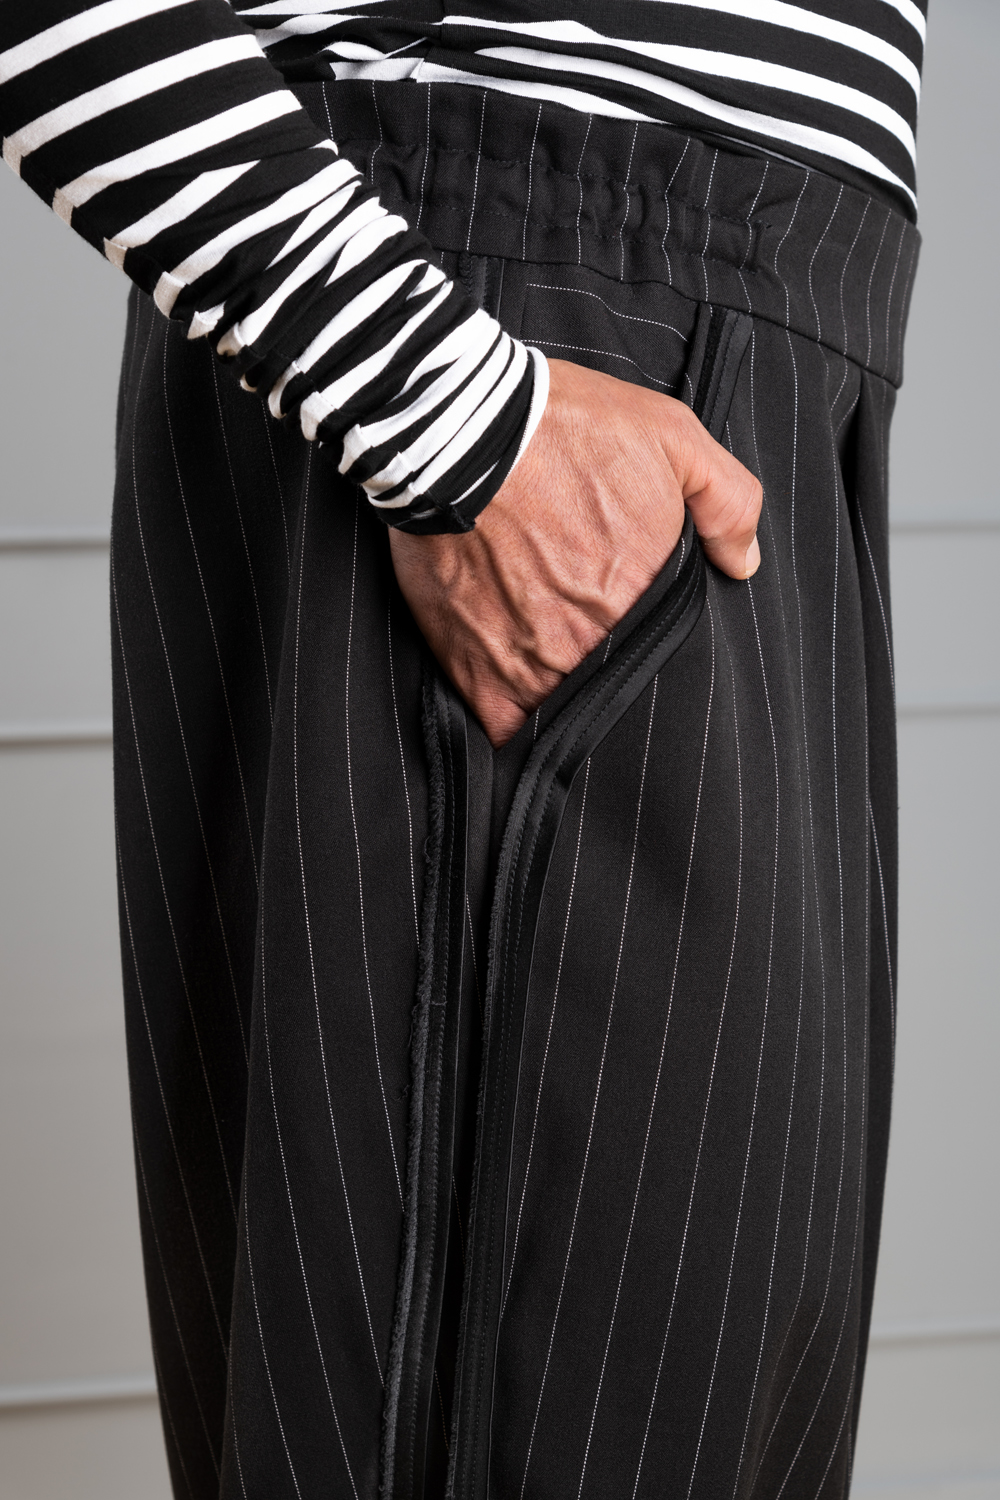 Radaus Men's pinstripe suit: for sale at 49.99€ on Mecshopping.it